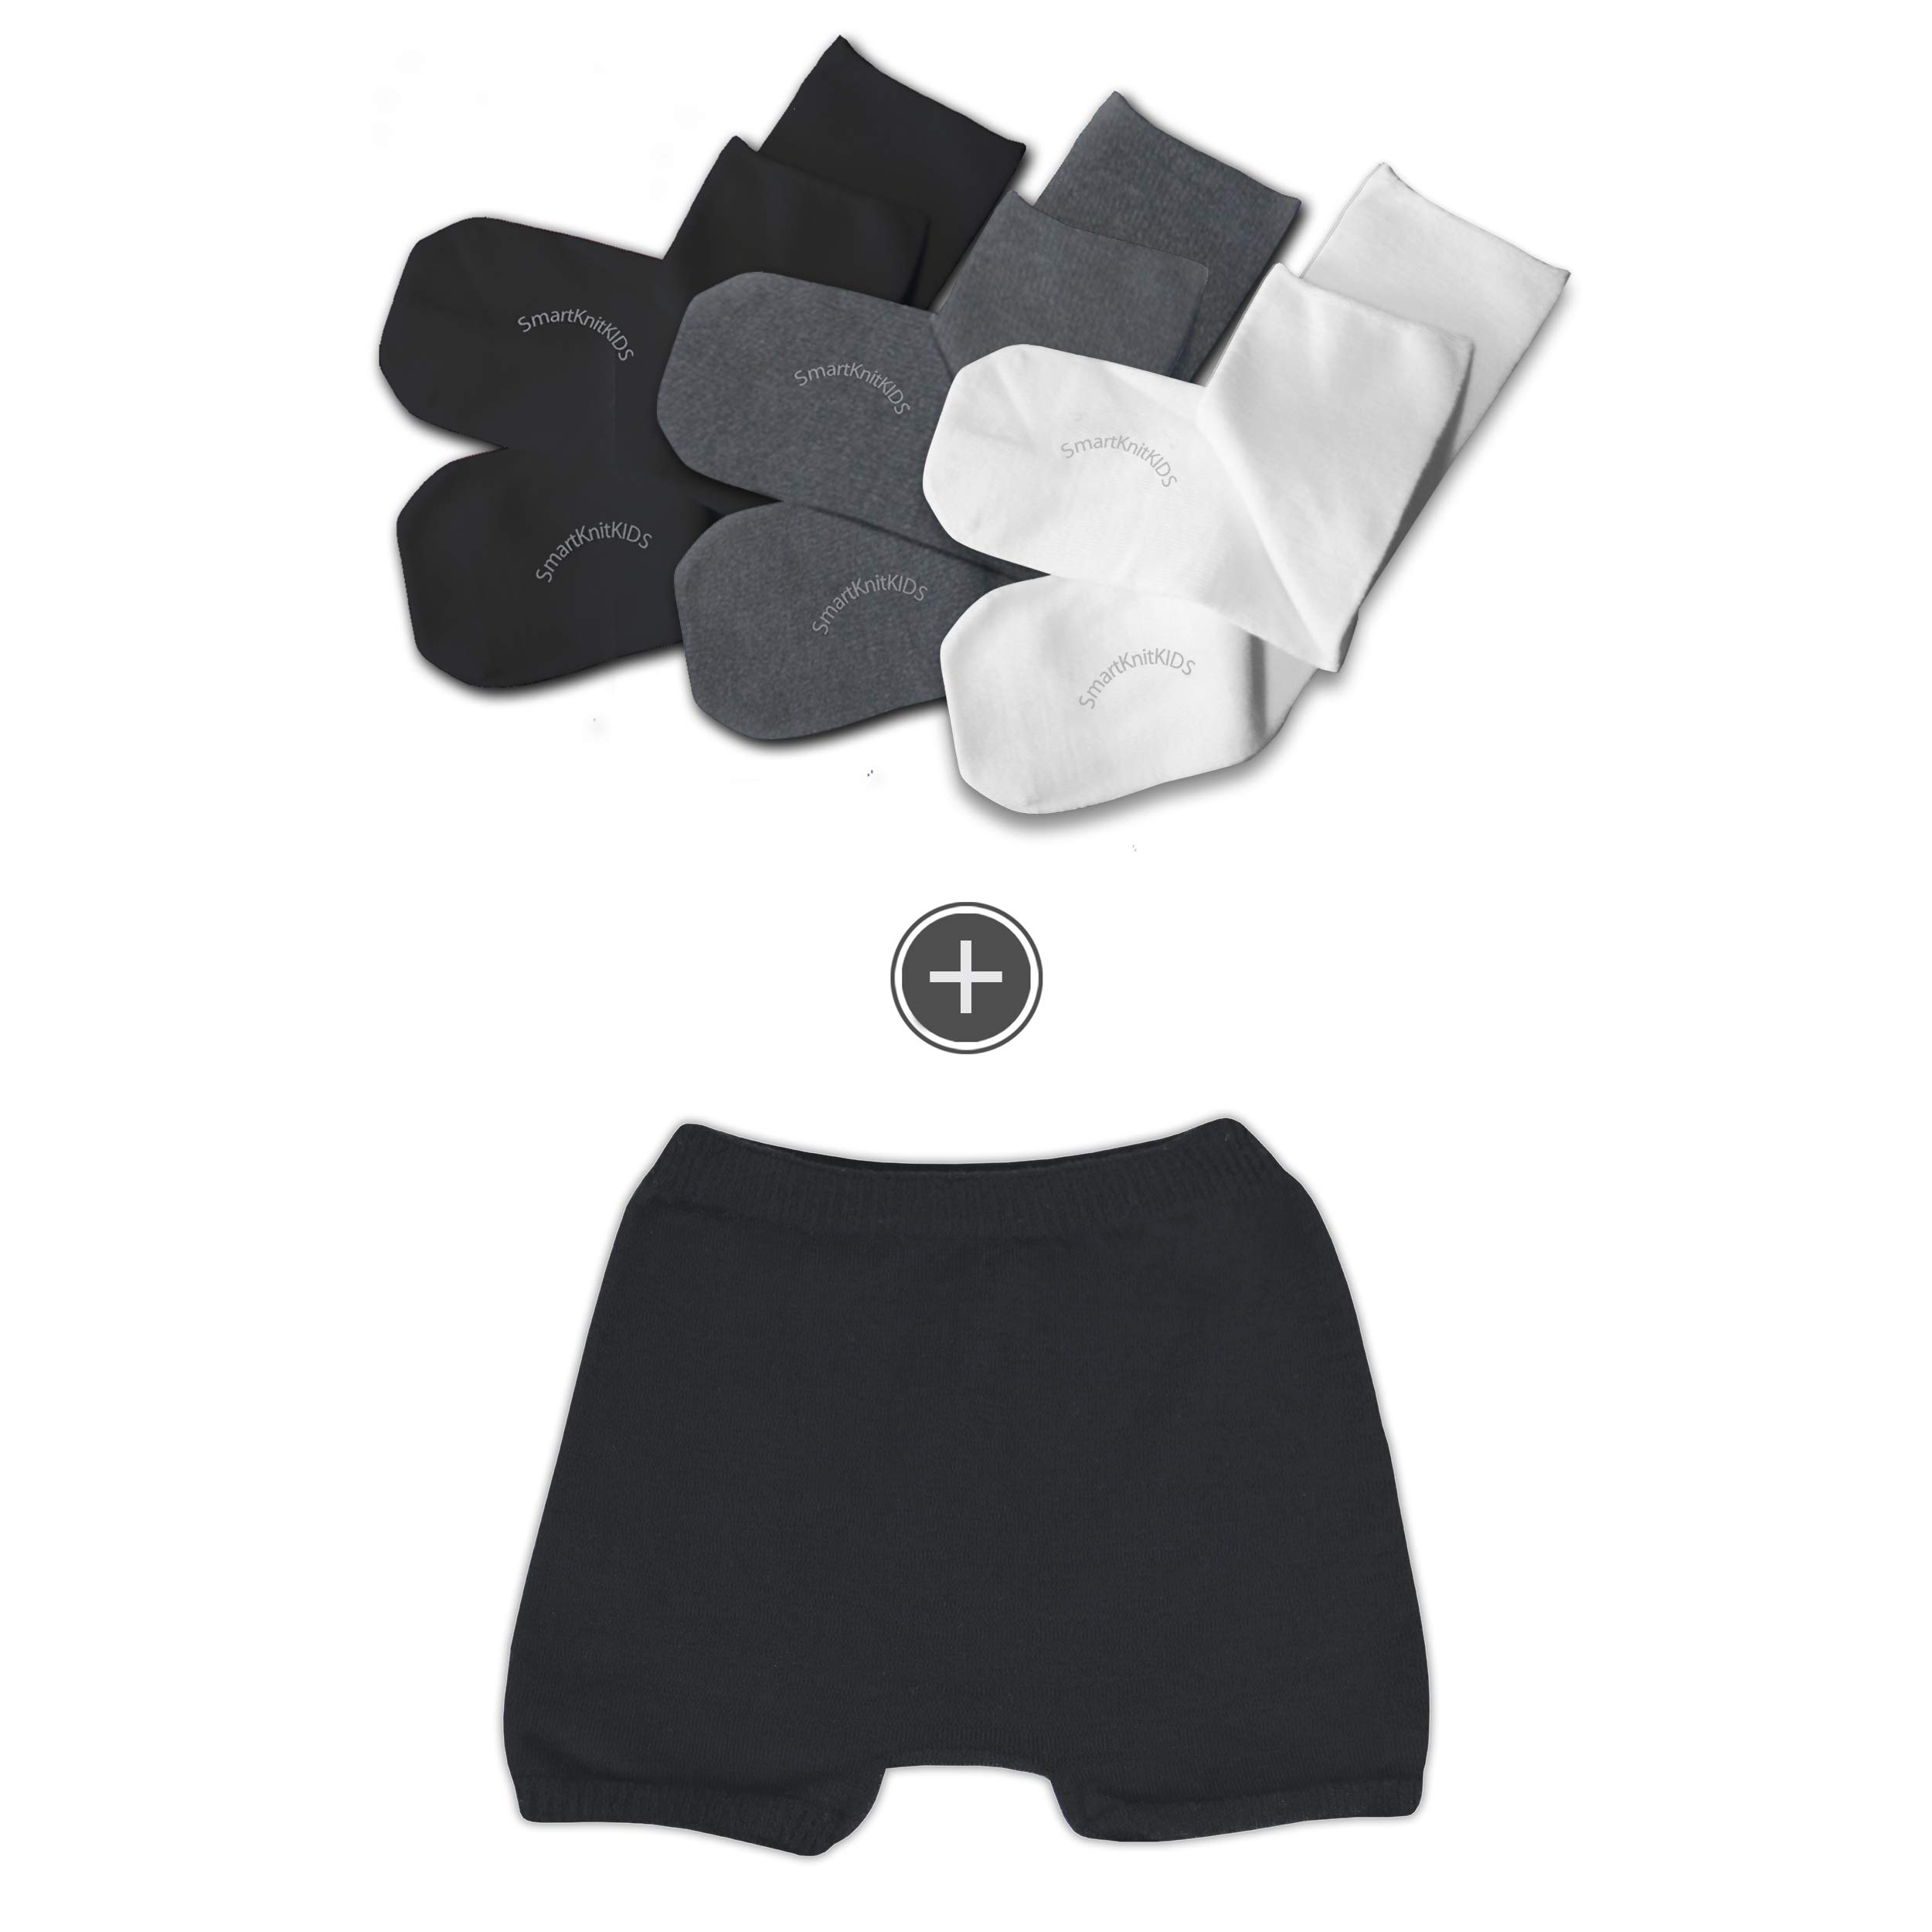 SmartKnitKIDS Seamless Sensory-Friendly Sensitivity Socks 3 Pack and Girls'  Boy Cut Style Seamless Undies (Pink/Purple/White 2X-Large & White Medium)